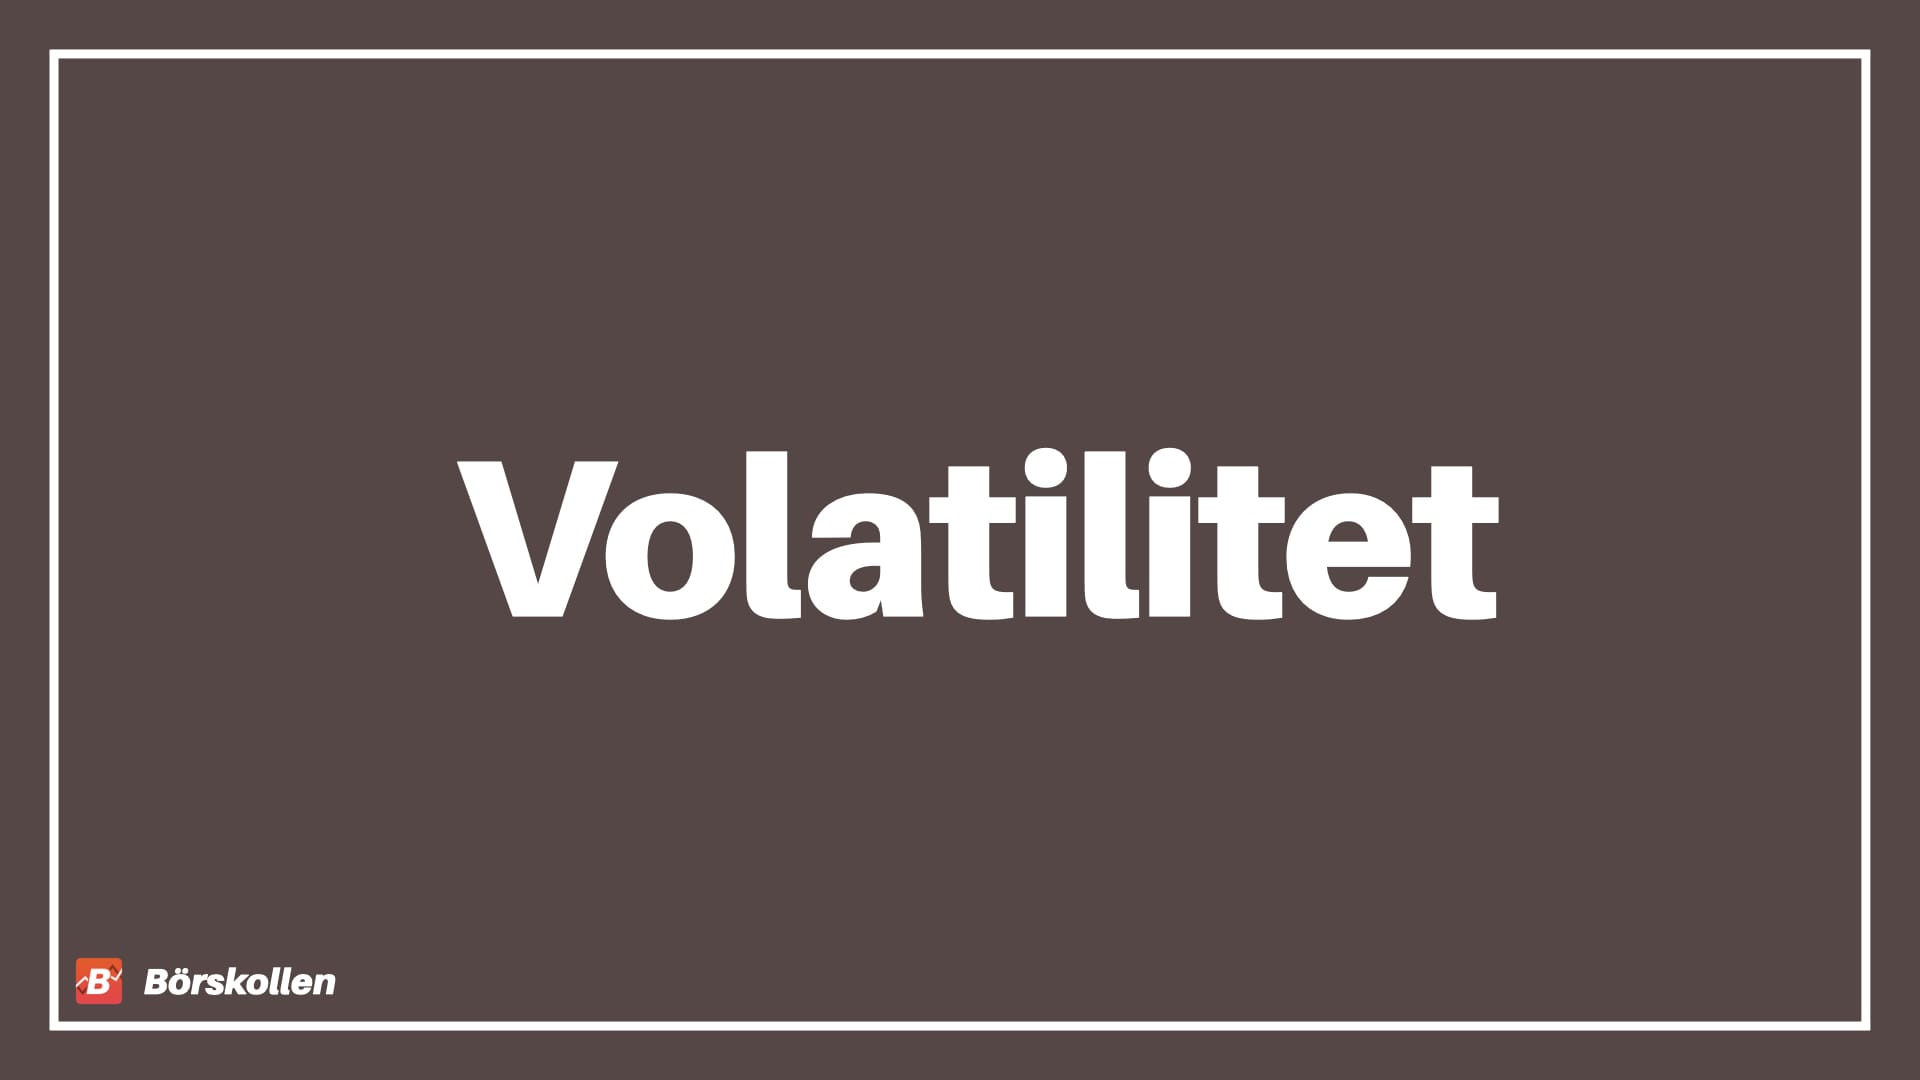 Volatilitet - funktion och förklaring